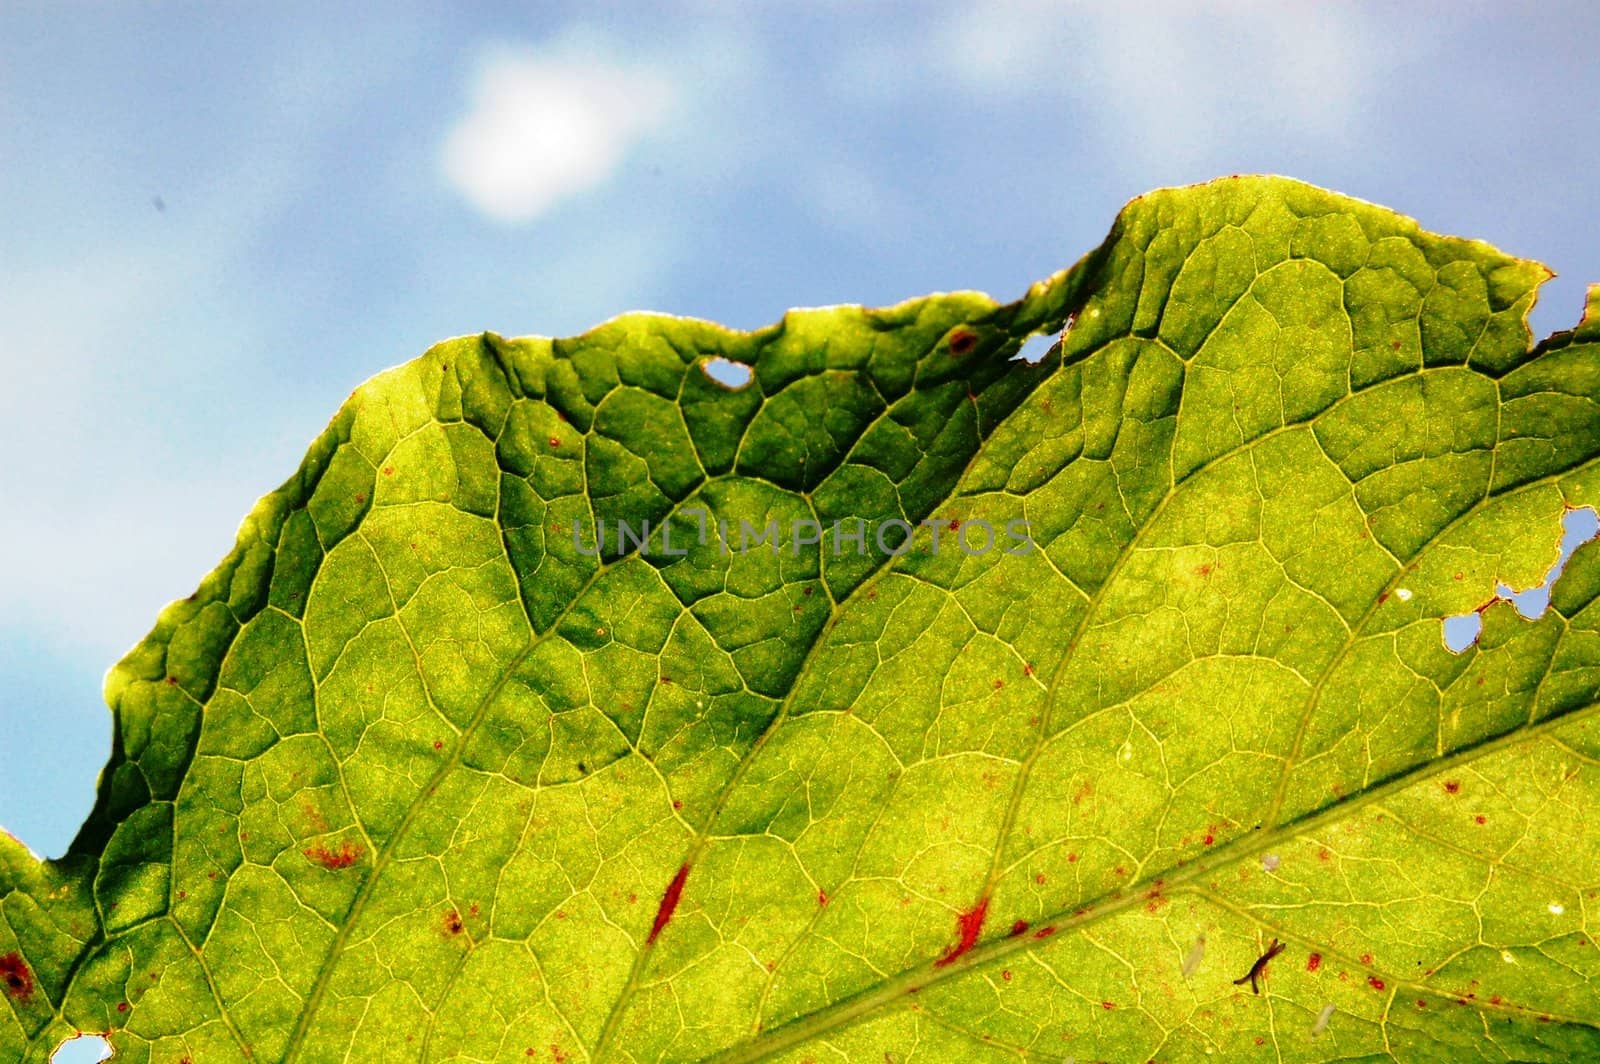 damaged leaf texture by nehru